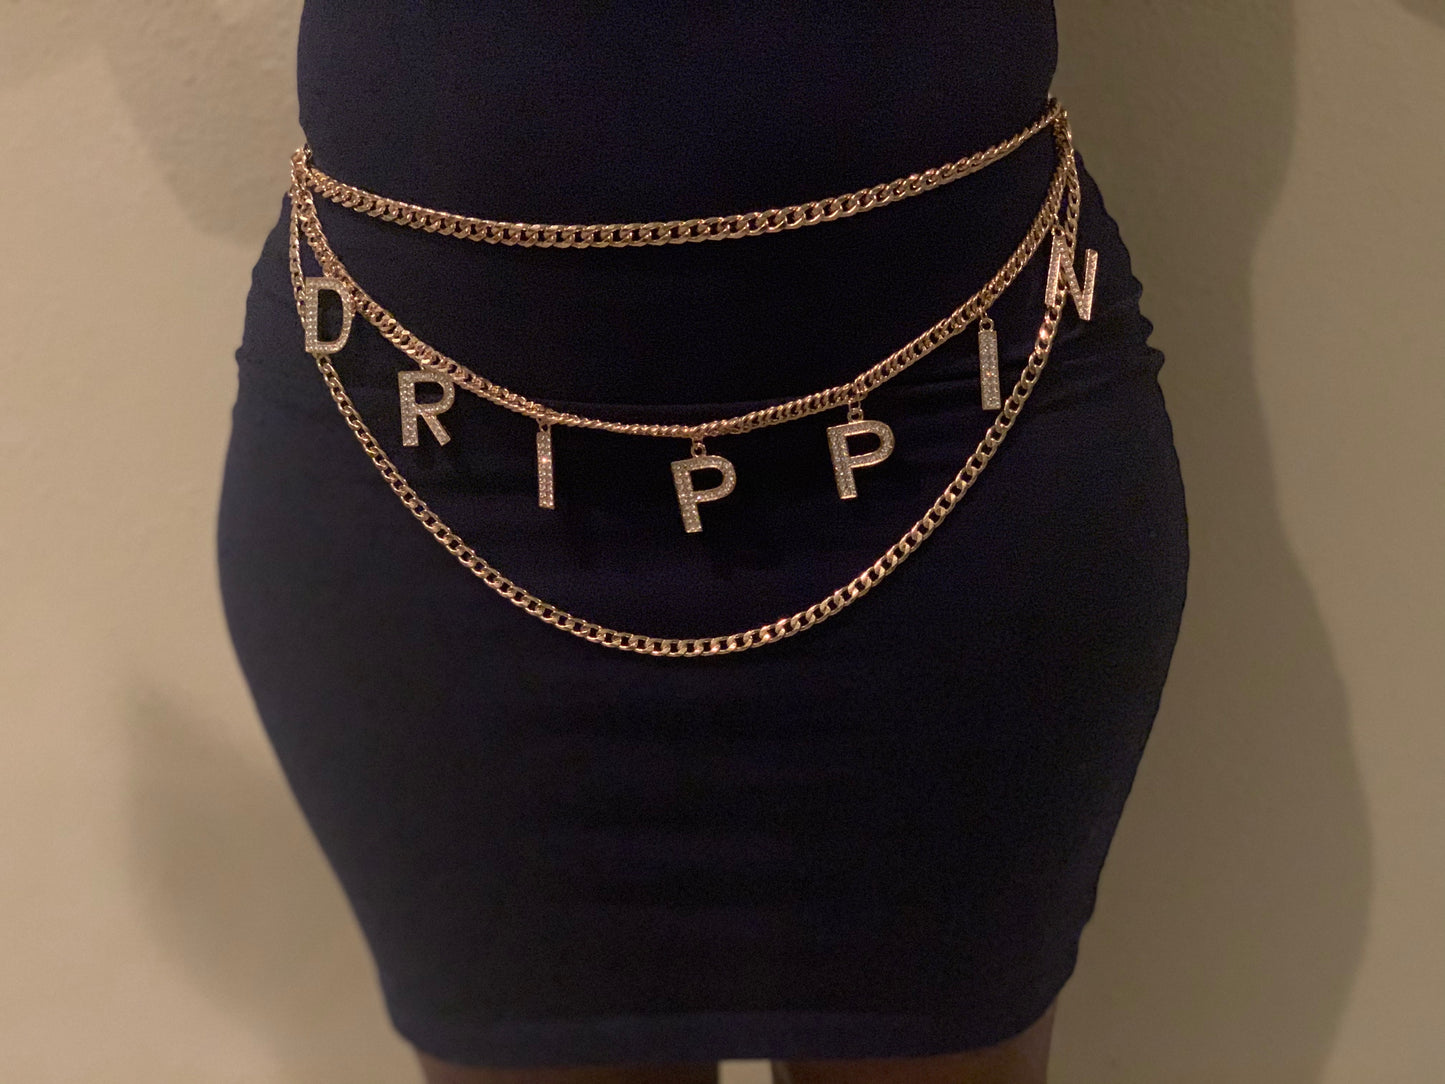 Drippin chain belt